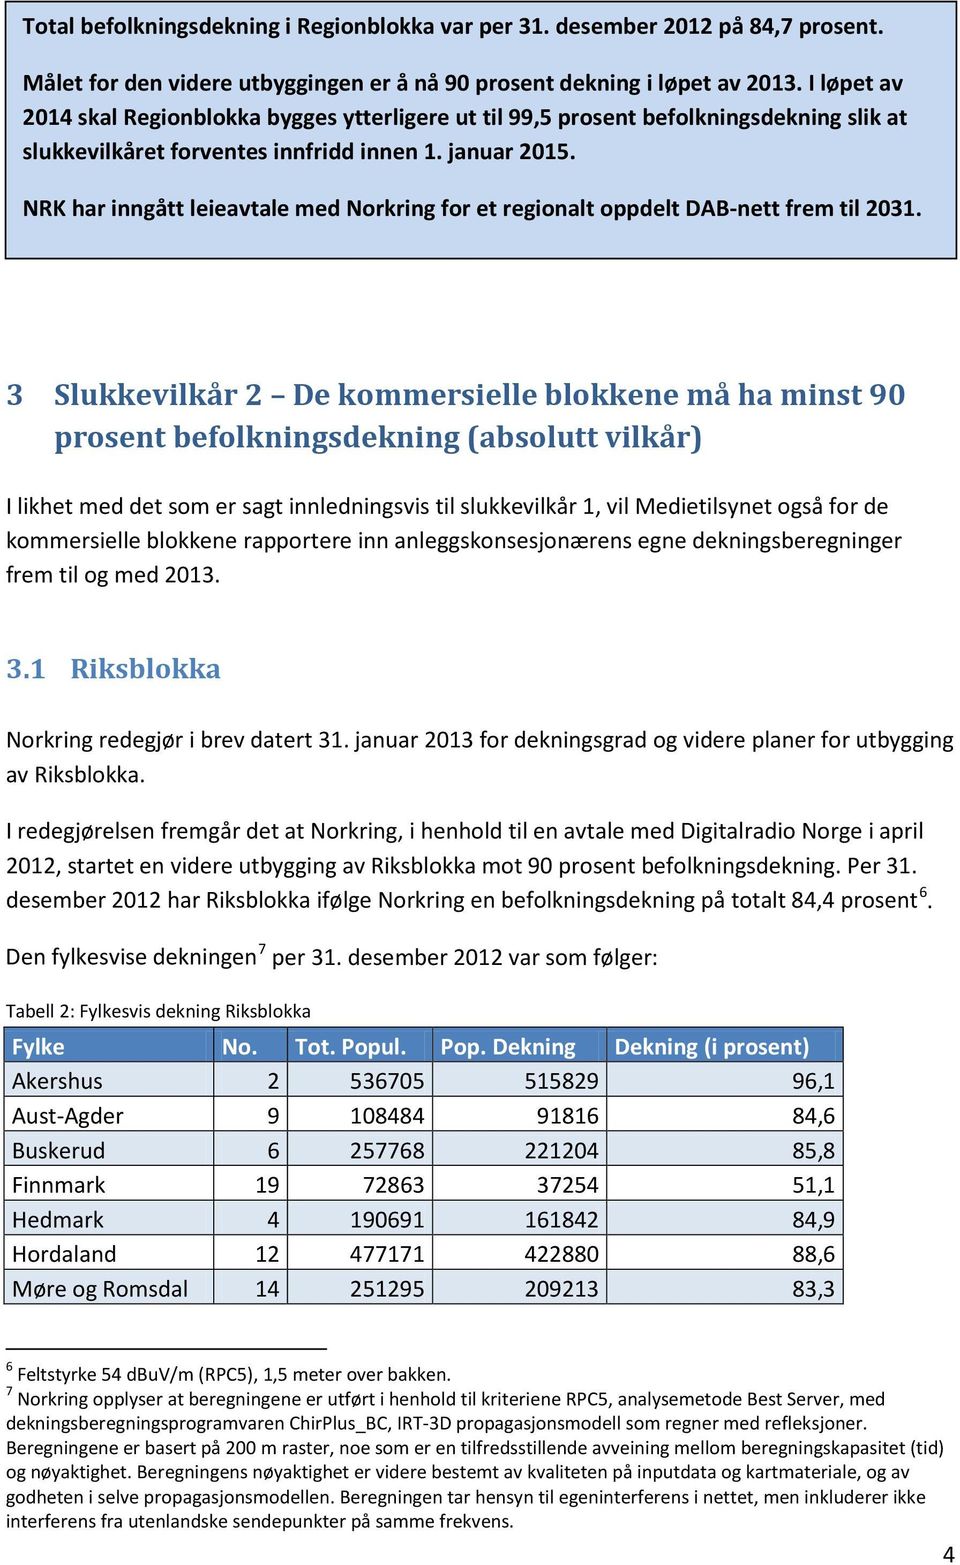 NRK har inngått leieavtale med Norkring for et regionalt oppdelt DAB-nett frem til 2031.